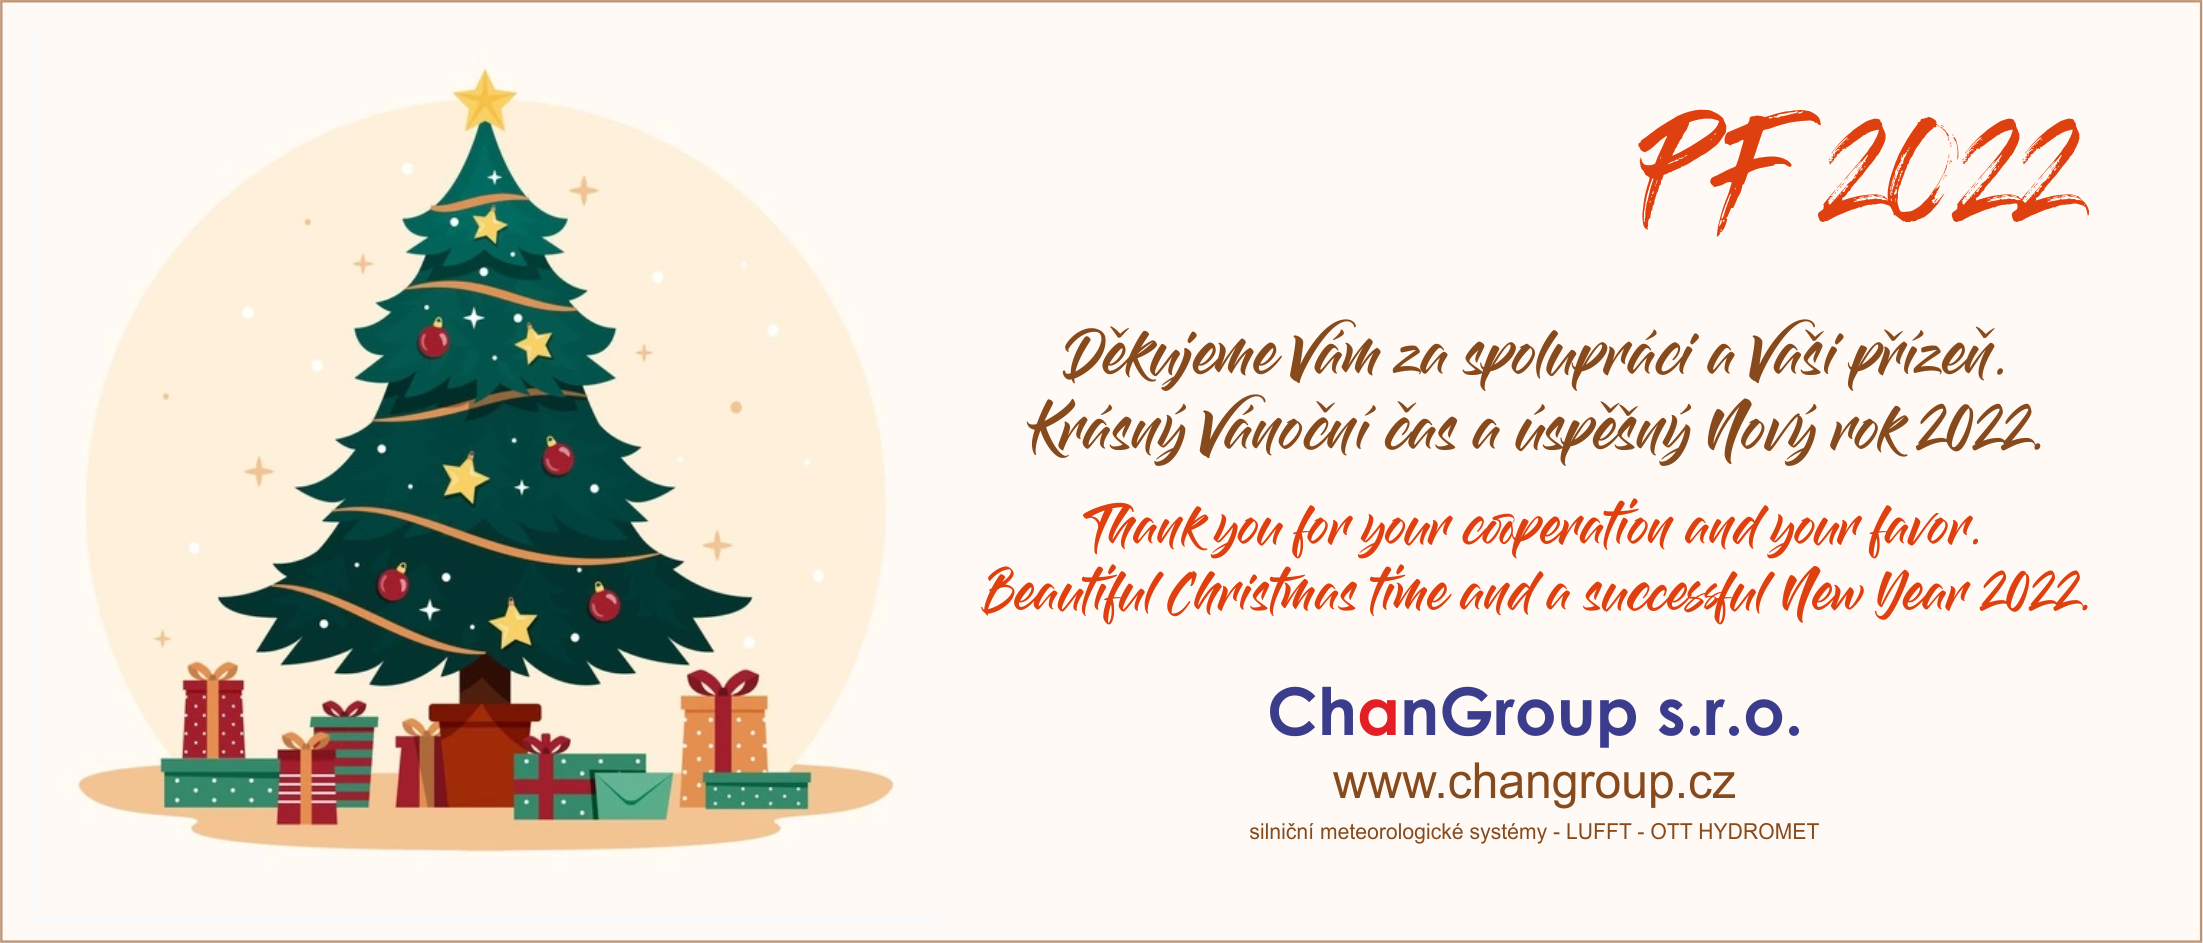 PF 2021 - Krásný Vánoční čas a úspěšný Nový rok 2022 přeje ChanGroup s.r.o.